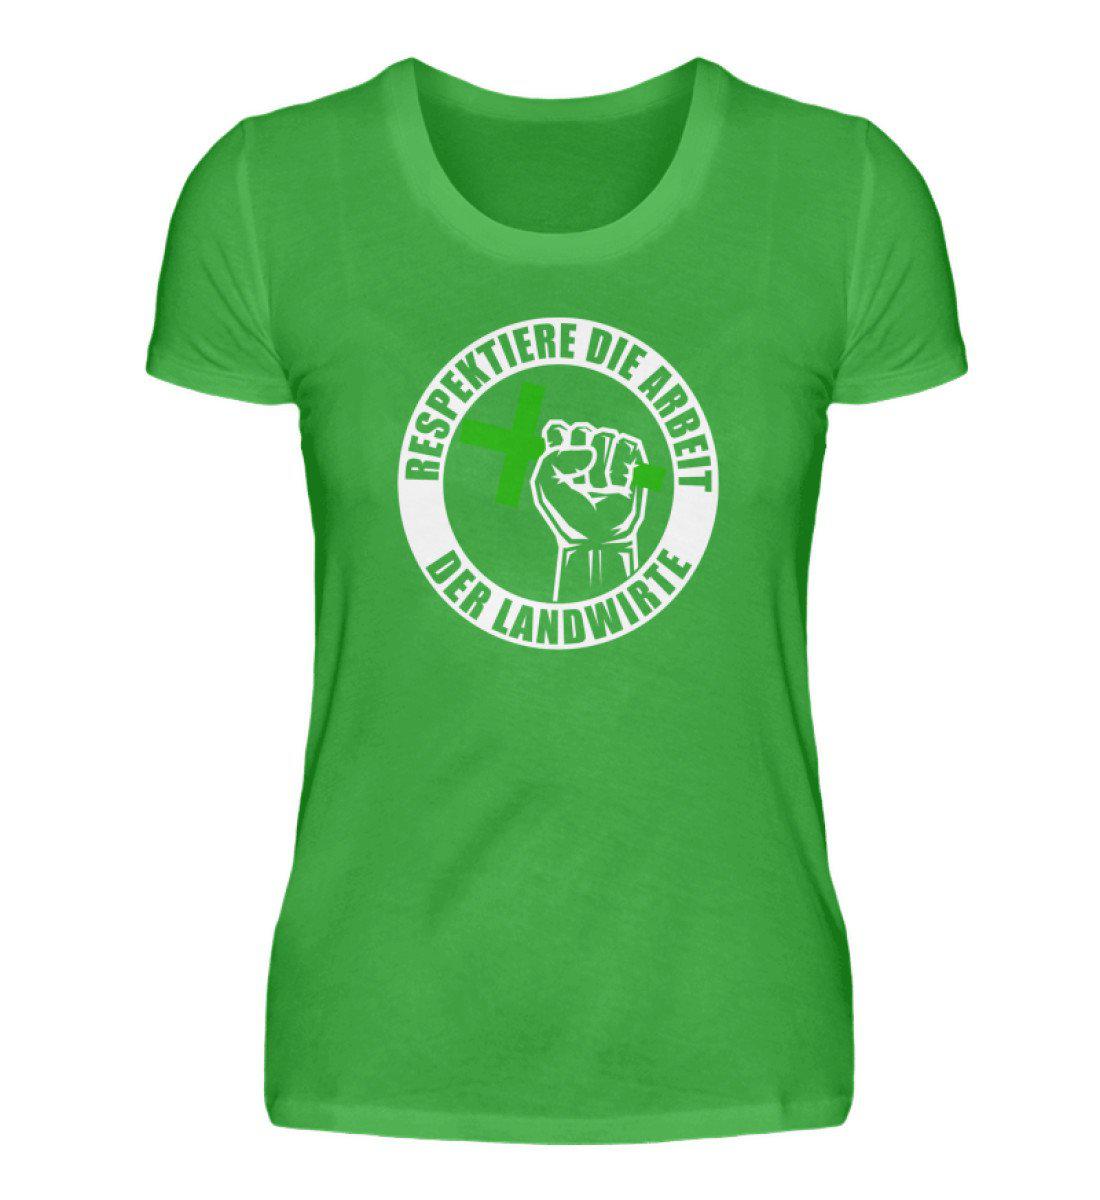 Respektiert Landwirte · Damen T-Shirt-Damen Basic T-Shirt-Green Apple-S-Agrarstarz